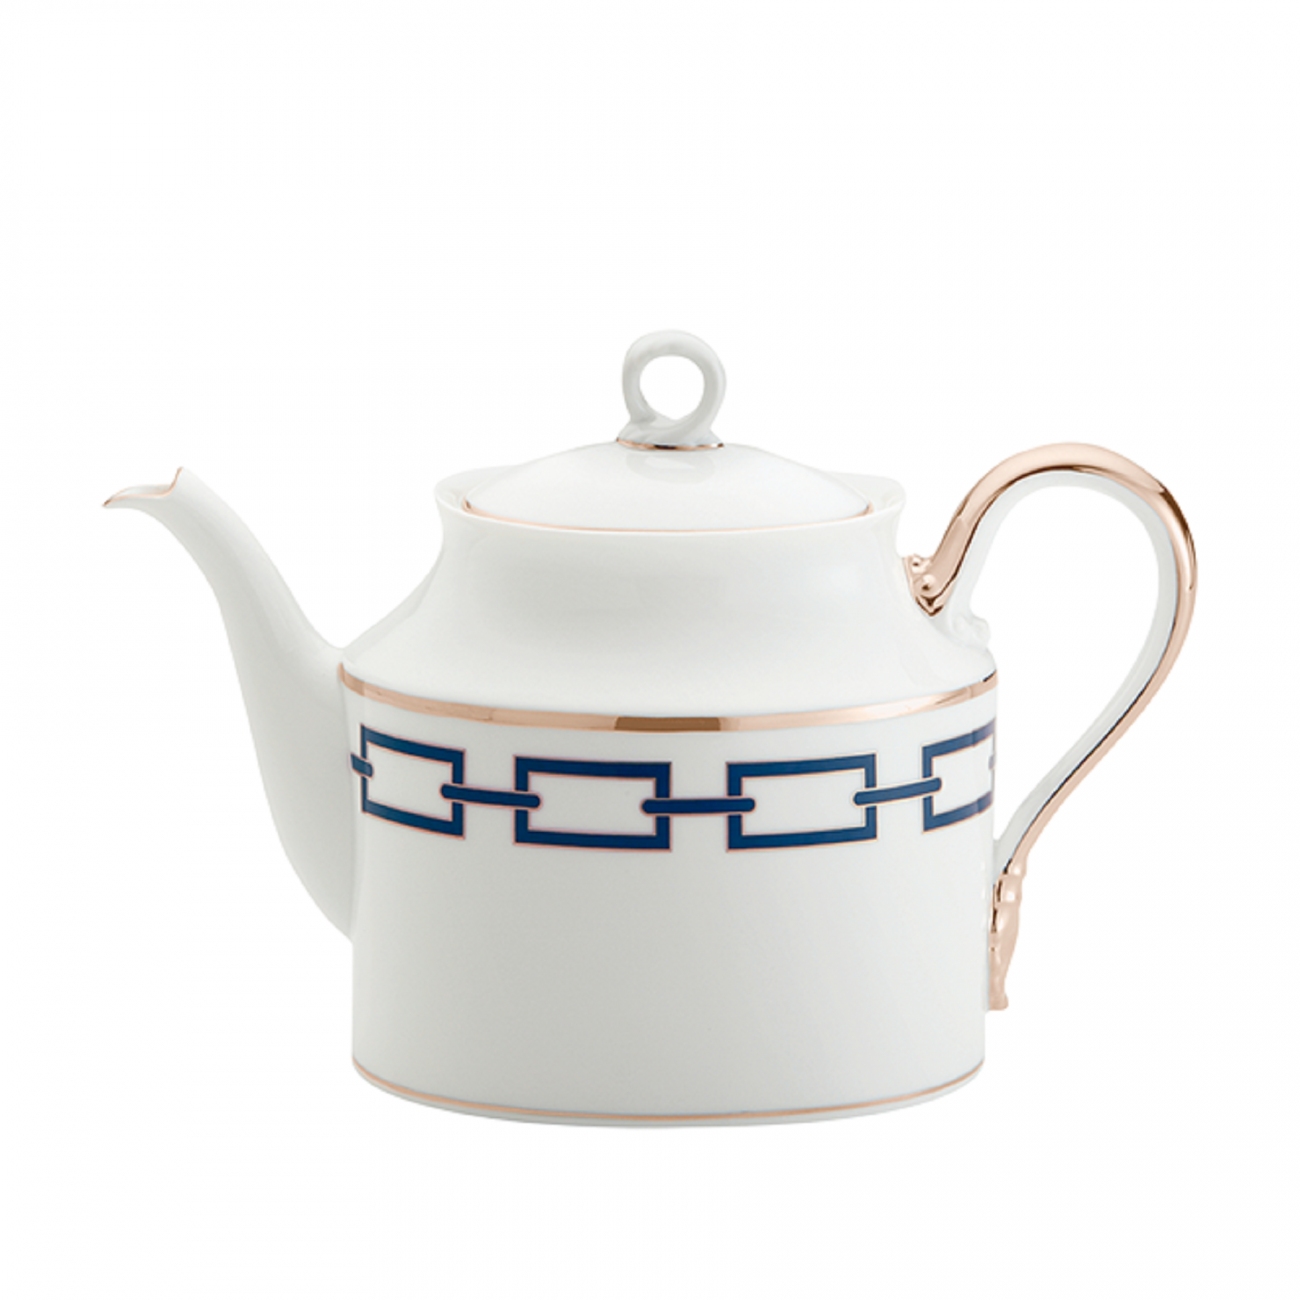 Ginori 1735 Catene Teapot with cover